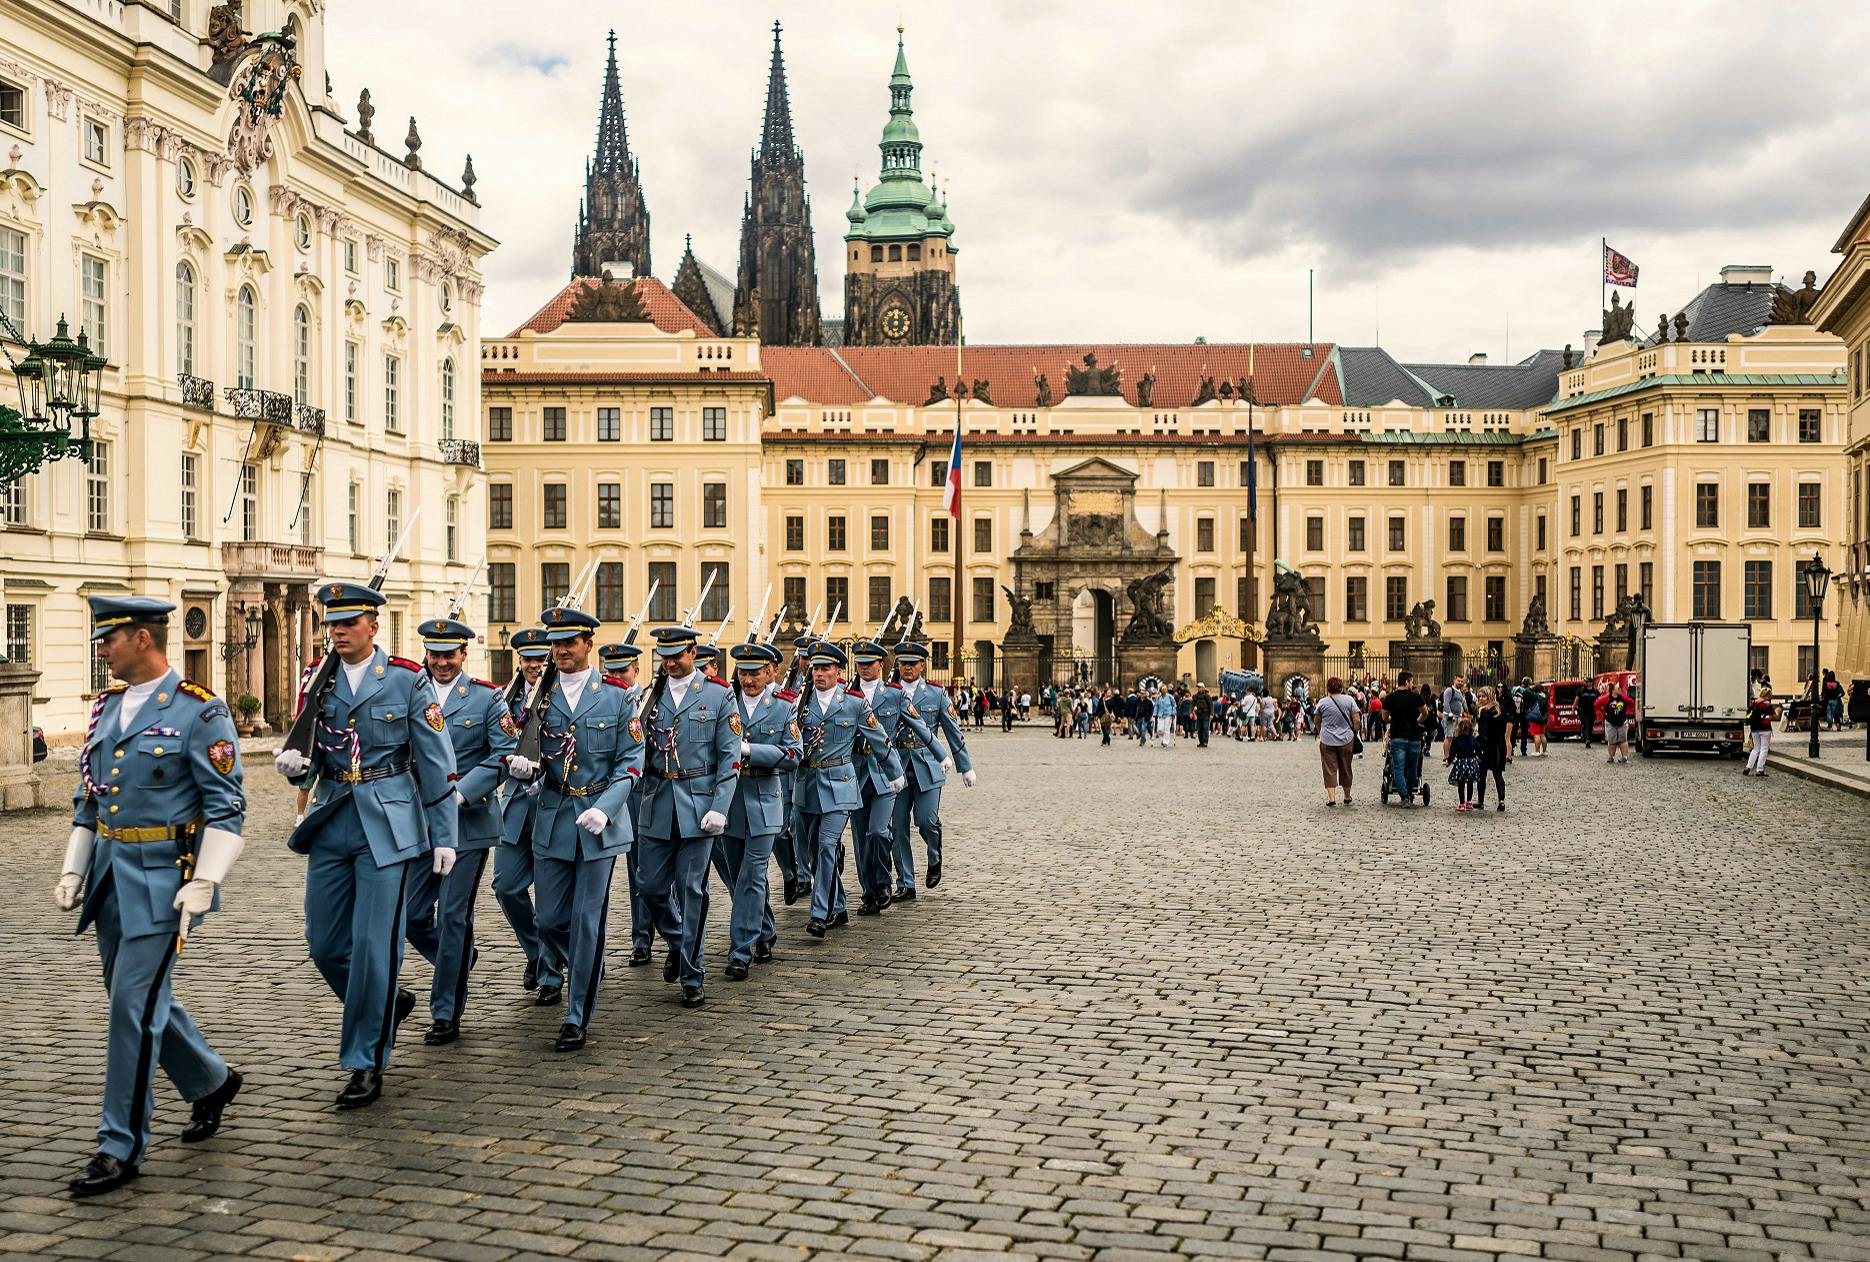 Visita introductoria al castillo de Praga con entrada incluida